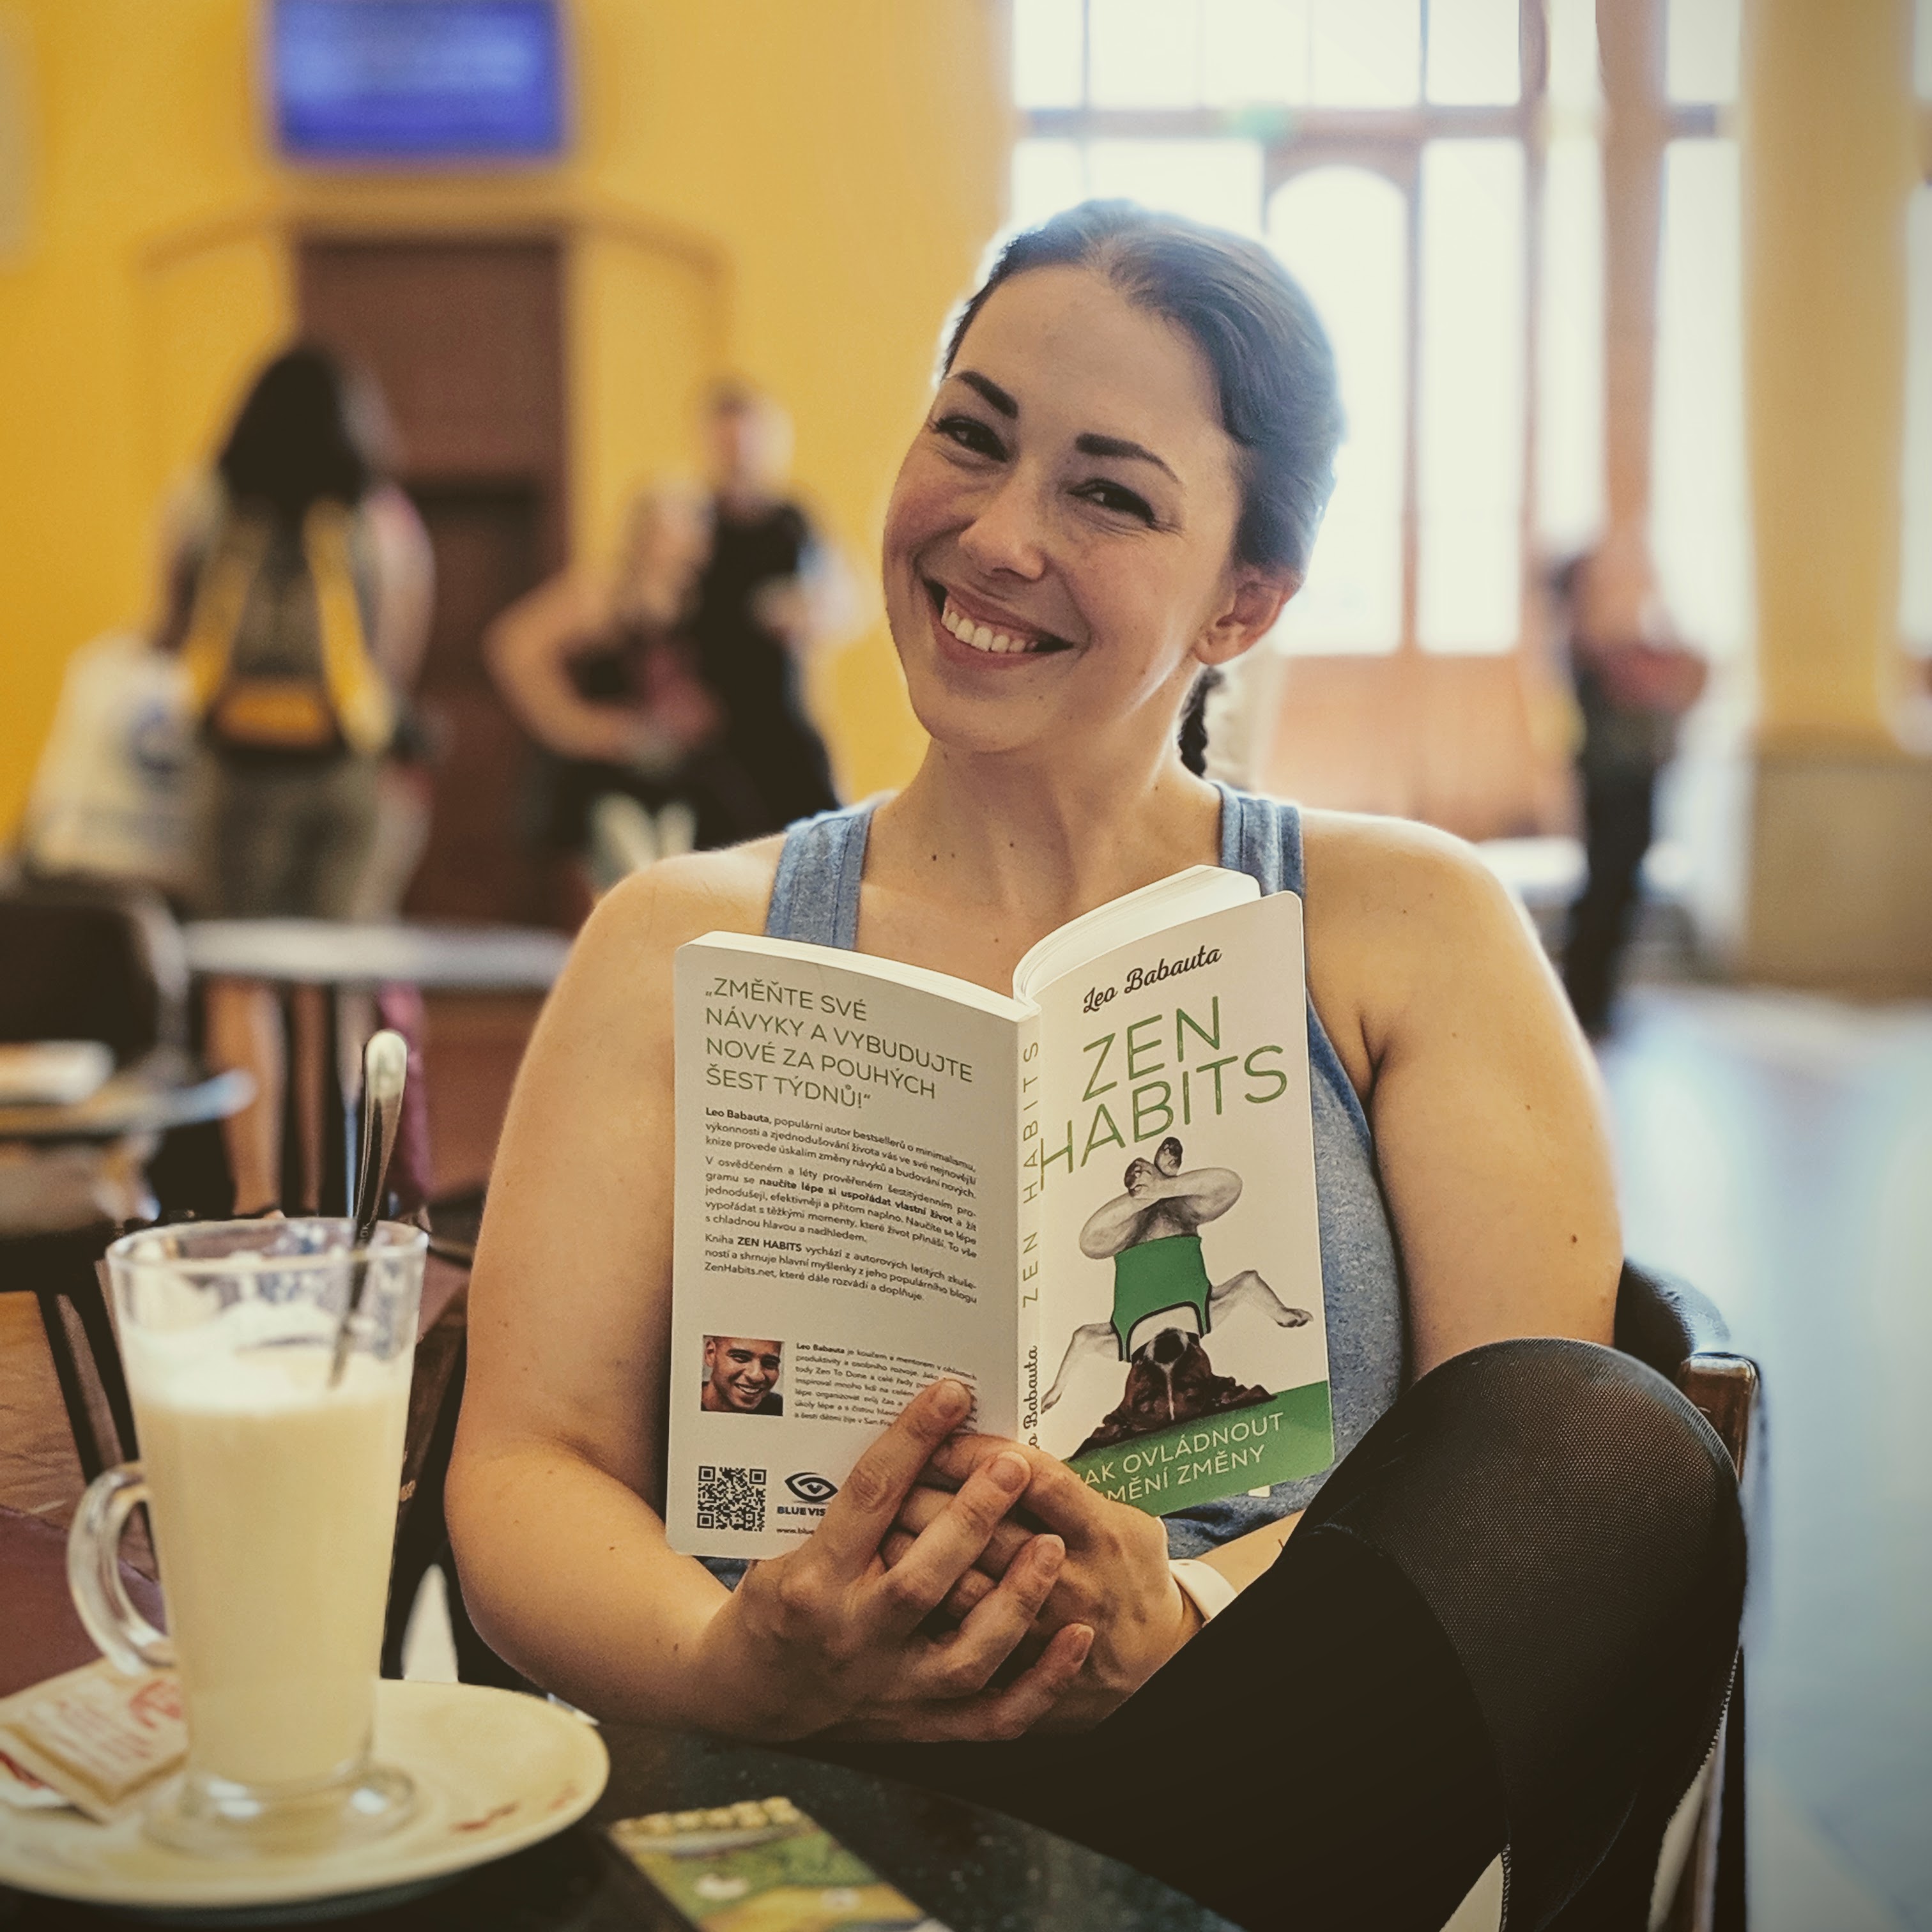 Fotka mě, jak sedím v kavárně na pražském vlakovém nádraží. V ruce držím knížku Zen Habits, kterou si právě čtu.